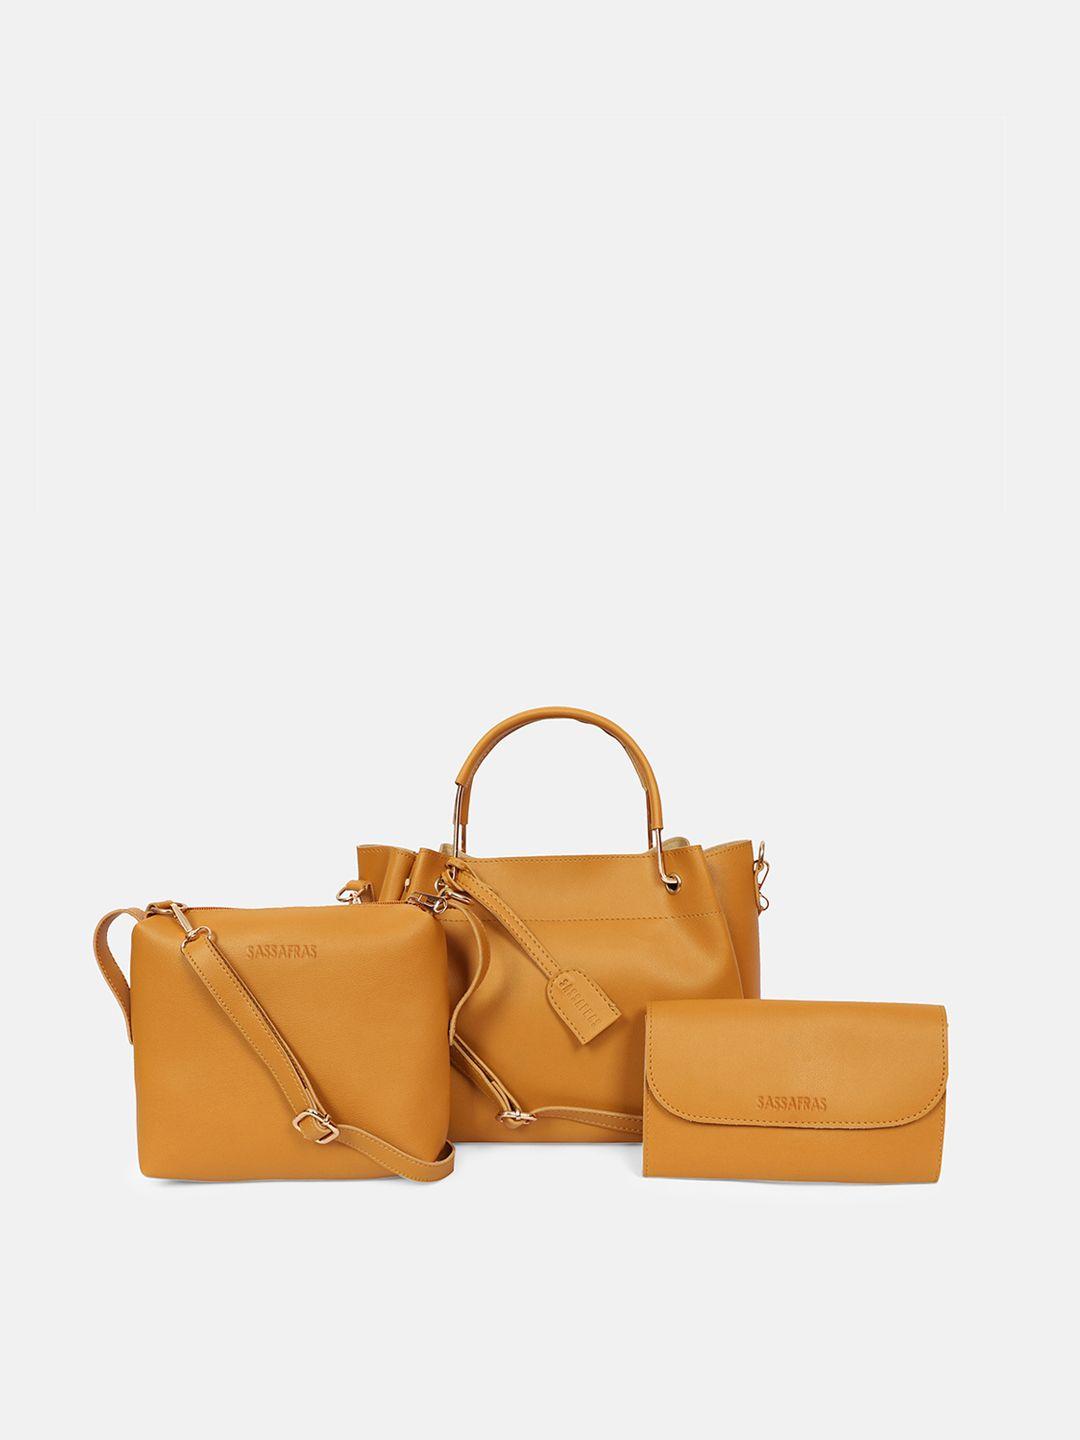 sassafras mustard brown structured handheld bag with sling bag & wallet